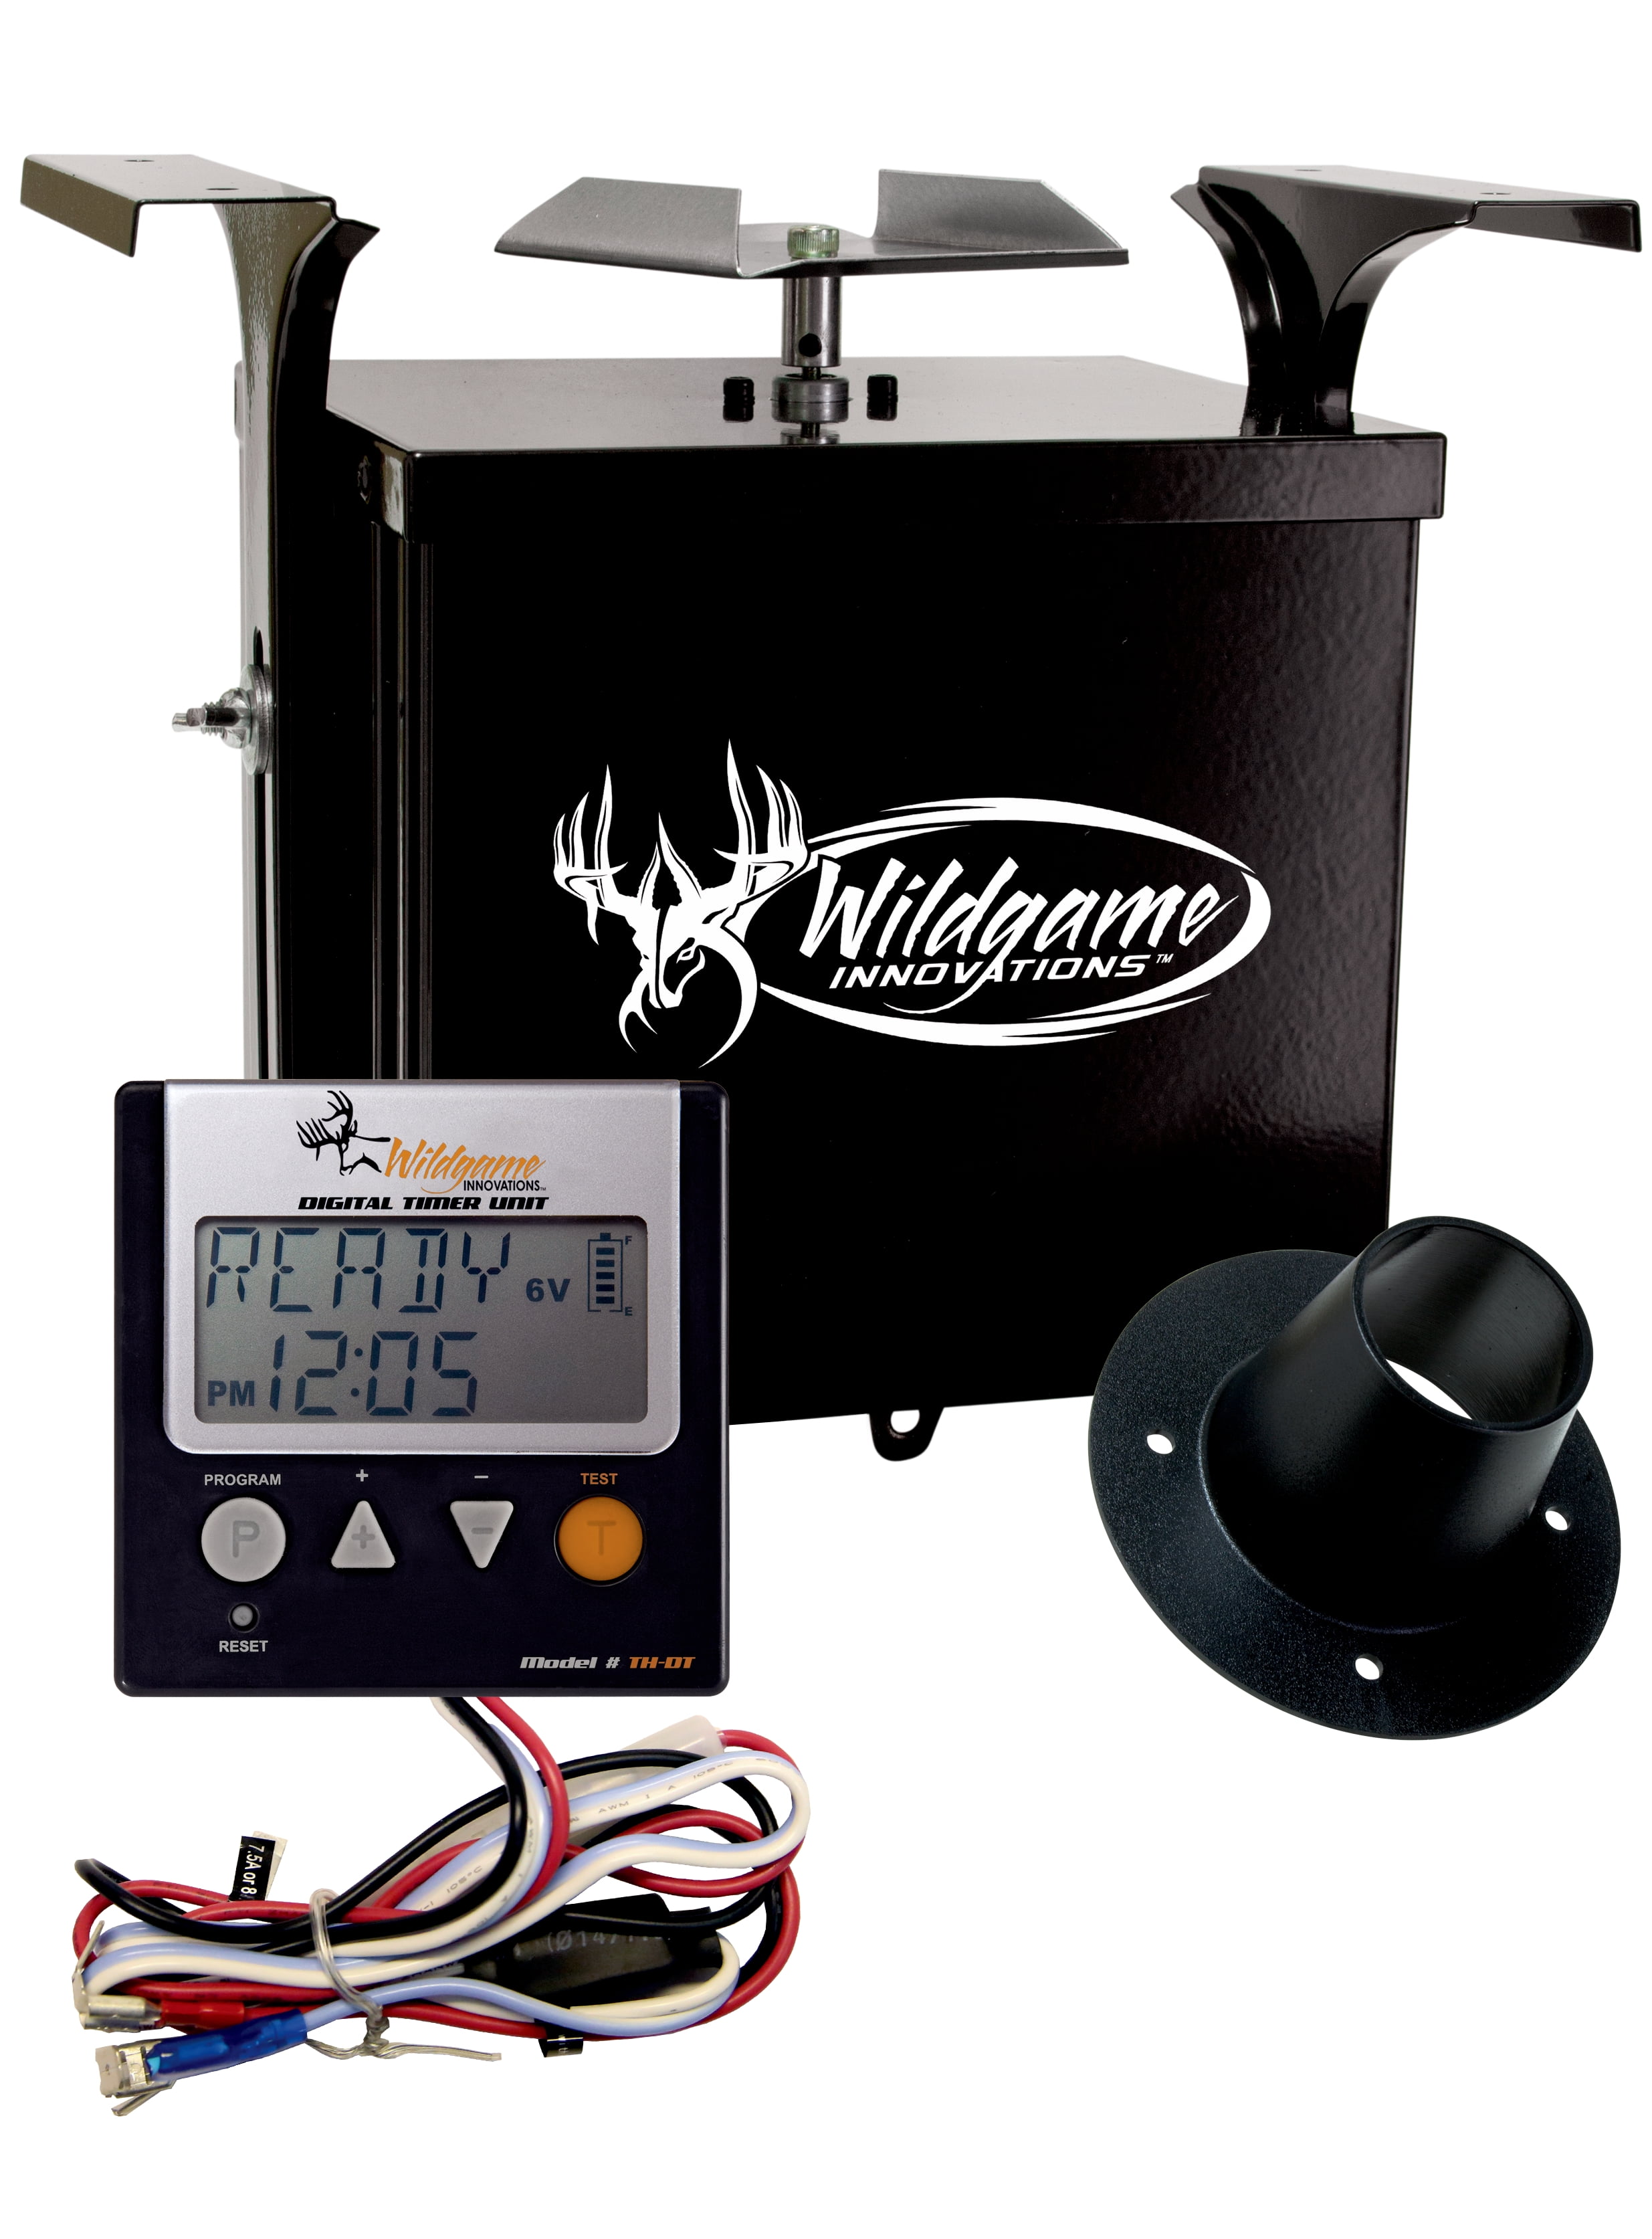 Wildgame Innovations TH-ST 6V or 12V Digital Timer Controller for sale online 